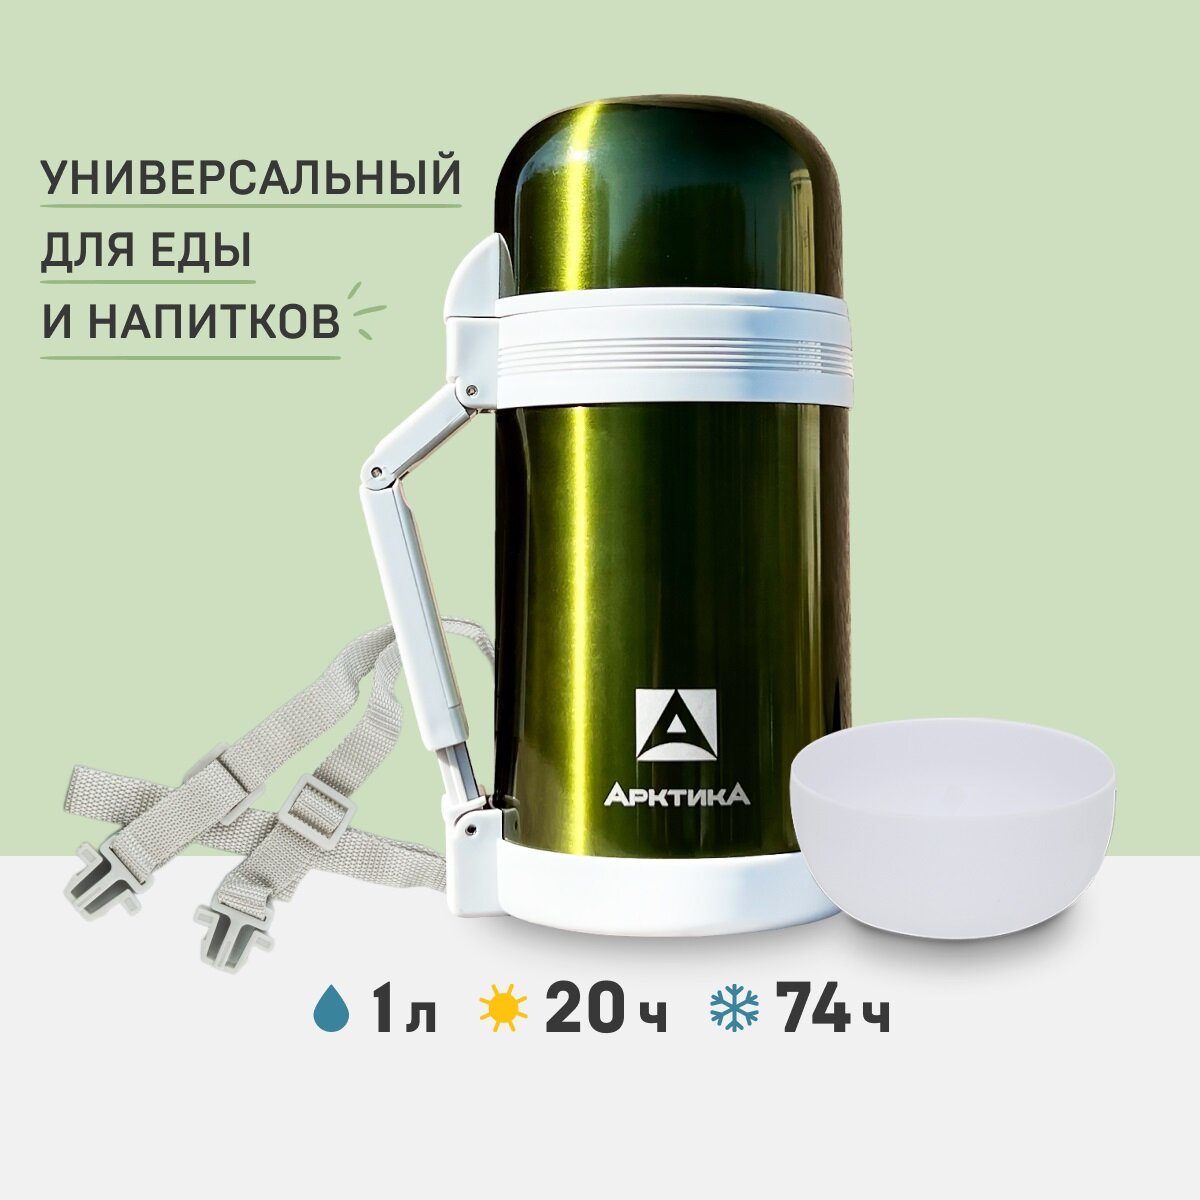 Термос для еды и напитков Арктика 202-1000 зеленый 1 литр с двумя чашками, складной ручкой и ремешком в комплекте